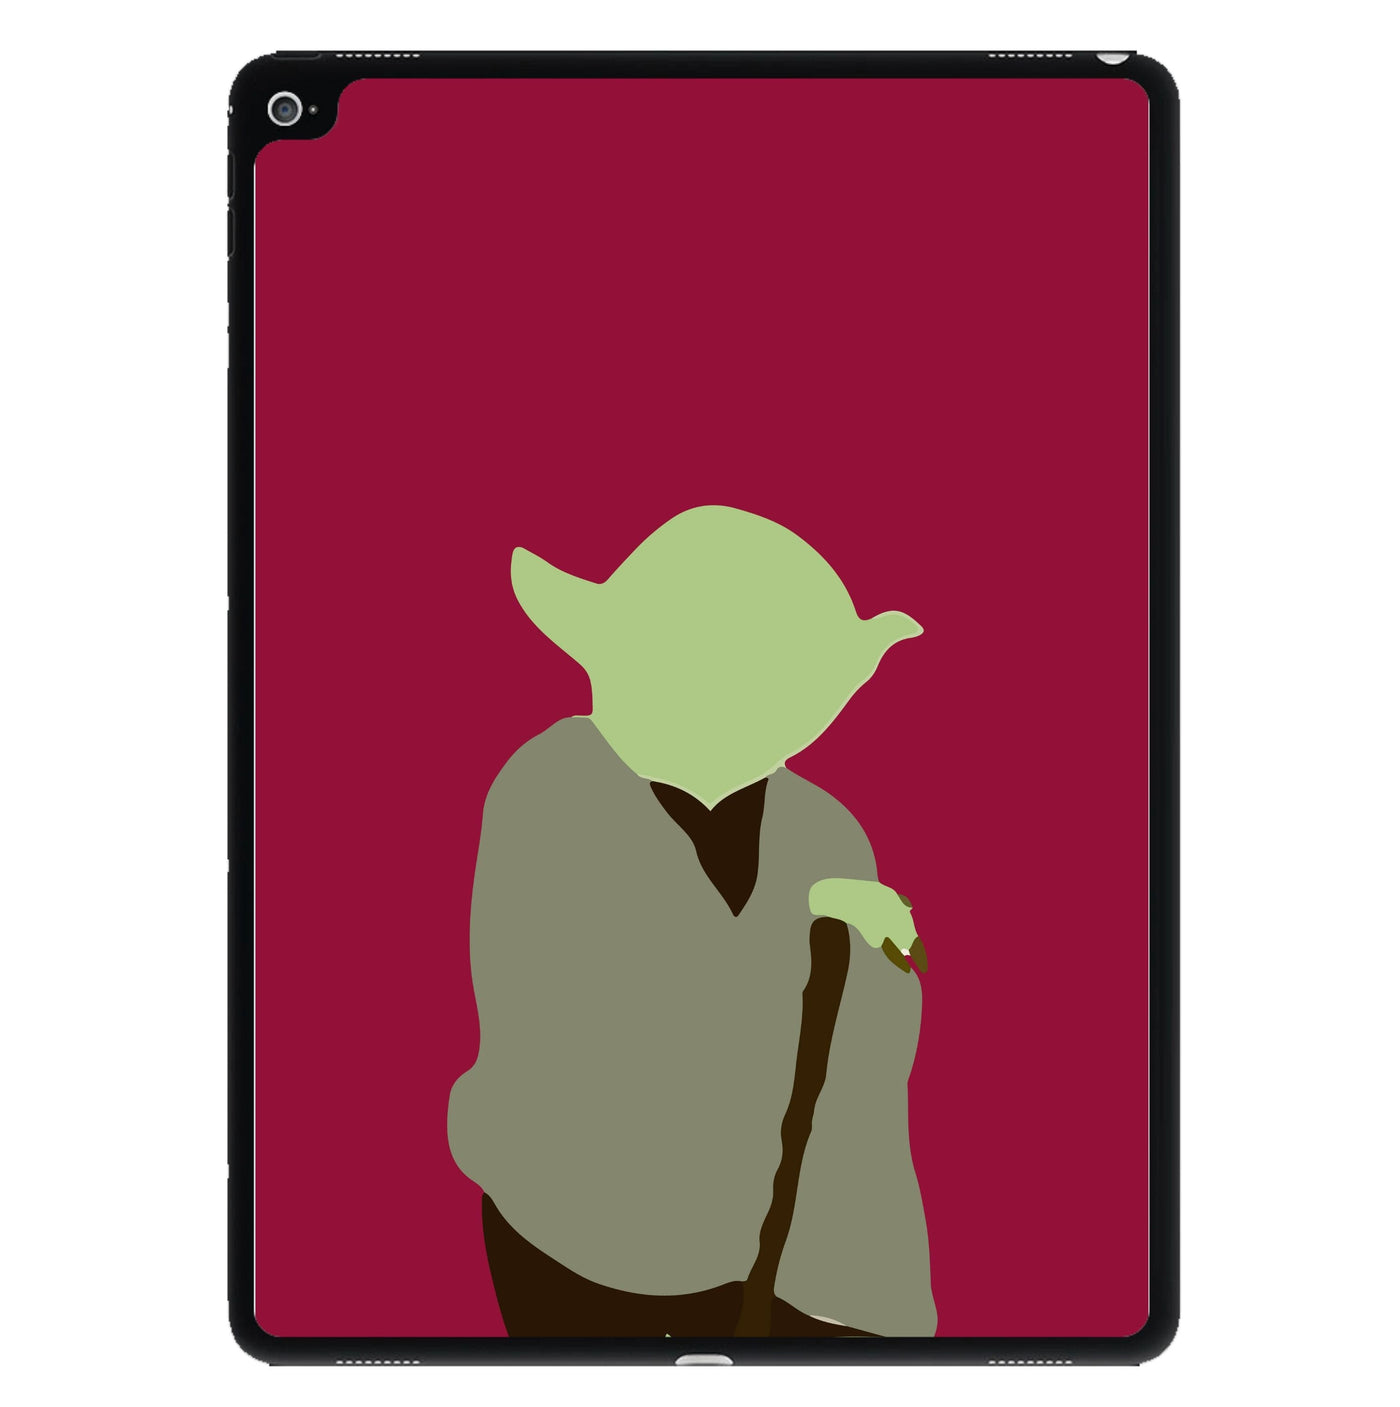 Yoda Faceless - Star Wars iPad Case